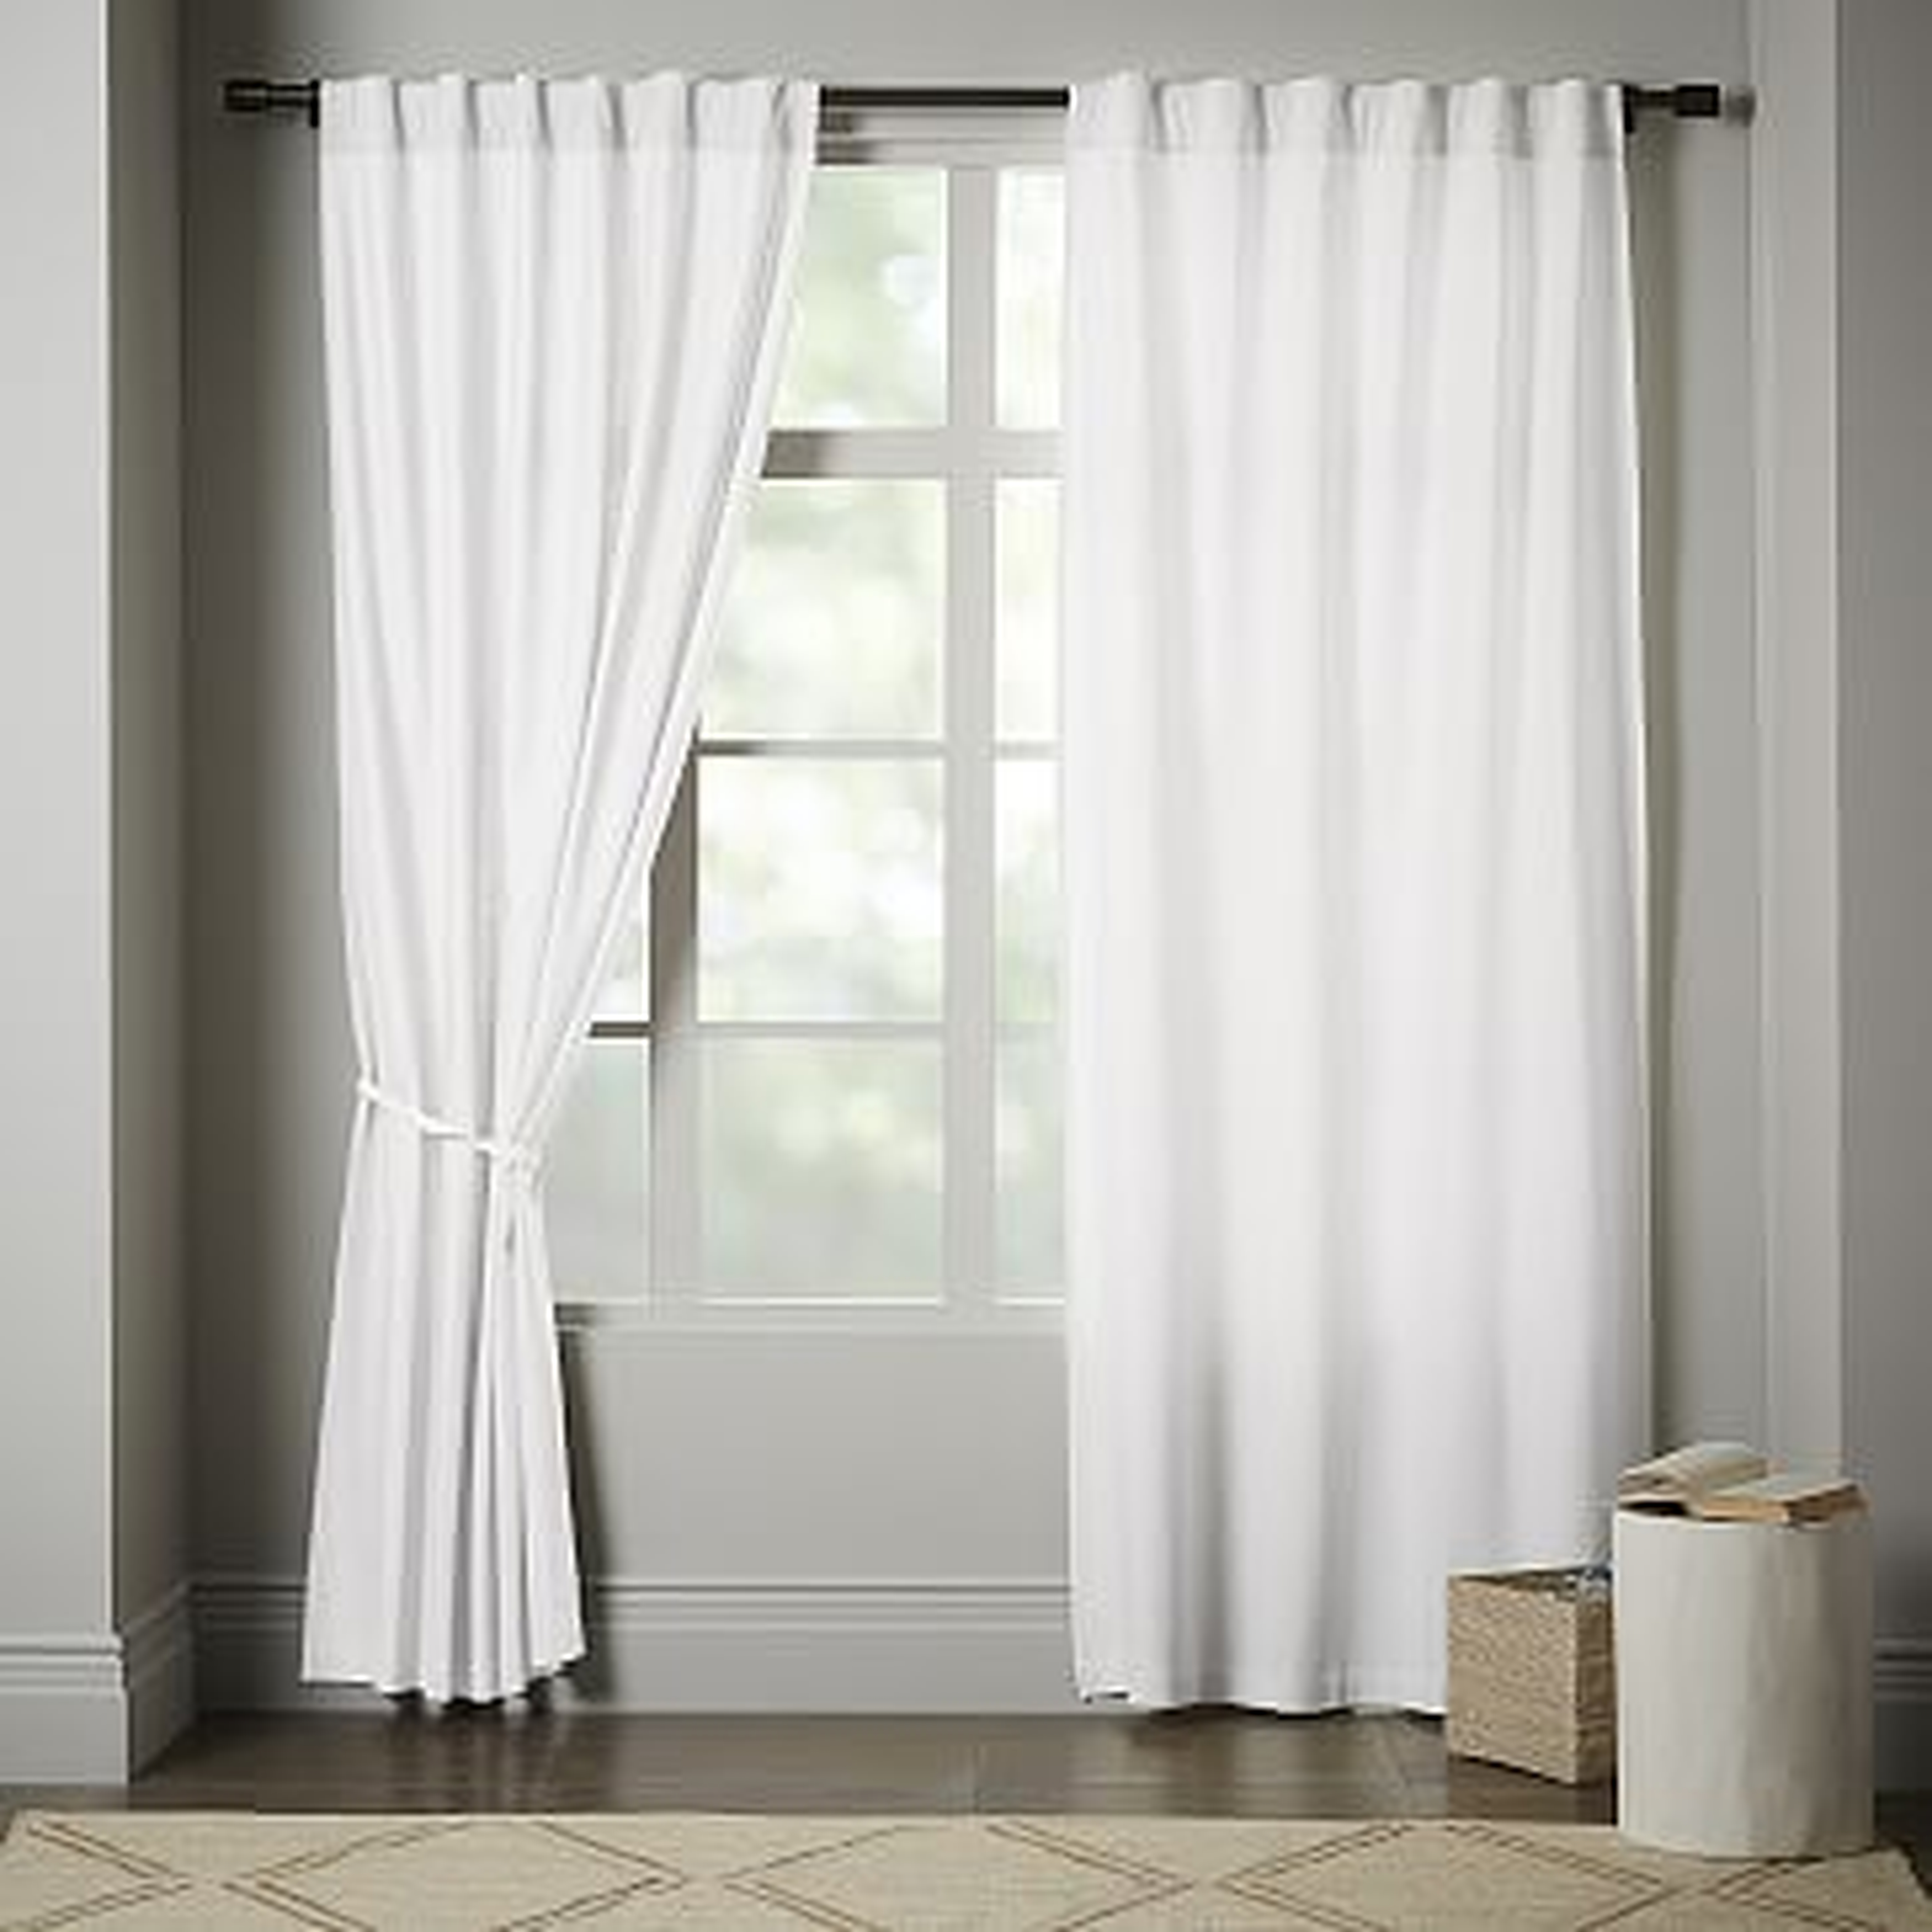 Linen Cotton Pole Pocket Curtain + Blackout Panel, White, 48"x84" - West Elm